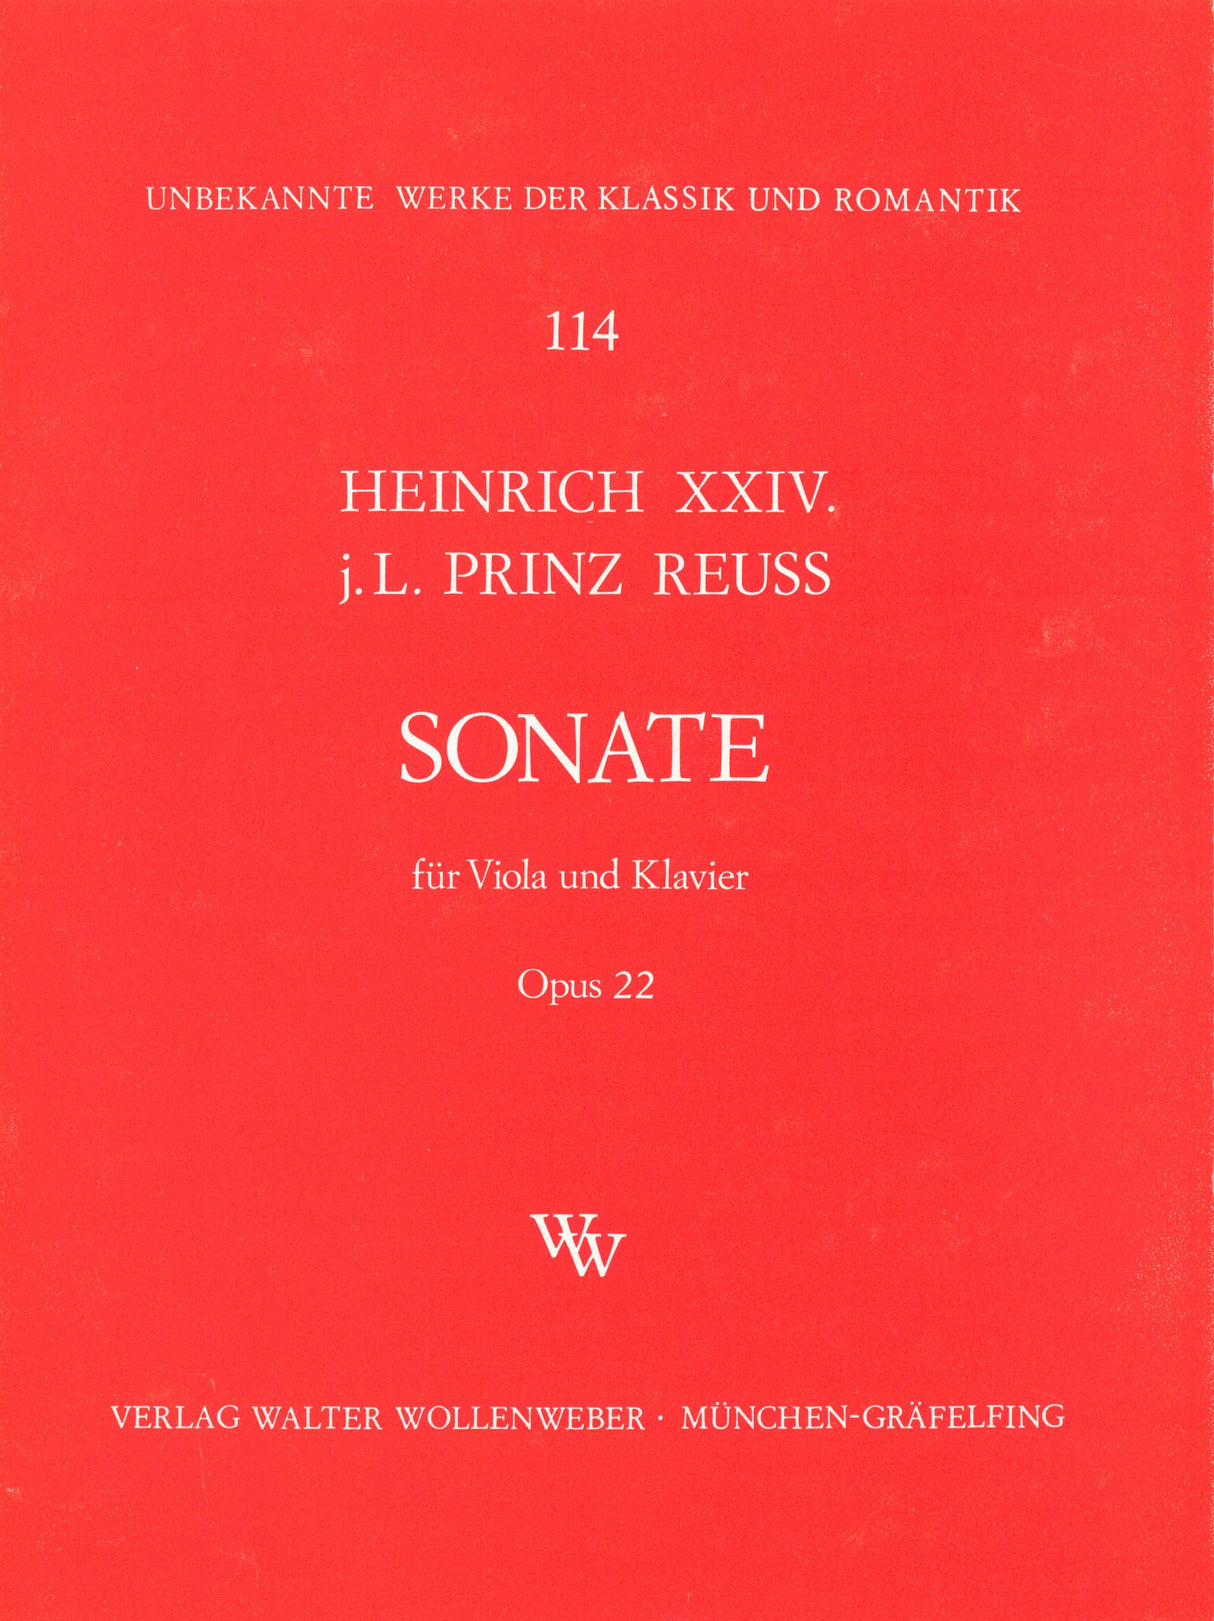 Heinrich XXIV: Viola Sonata, Op. 22